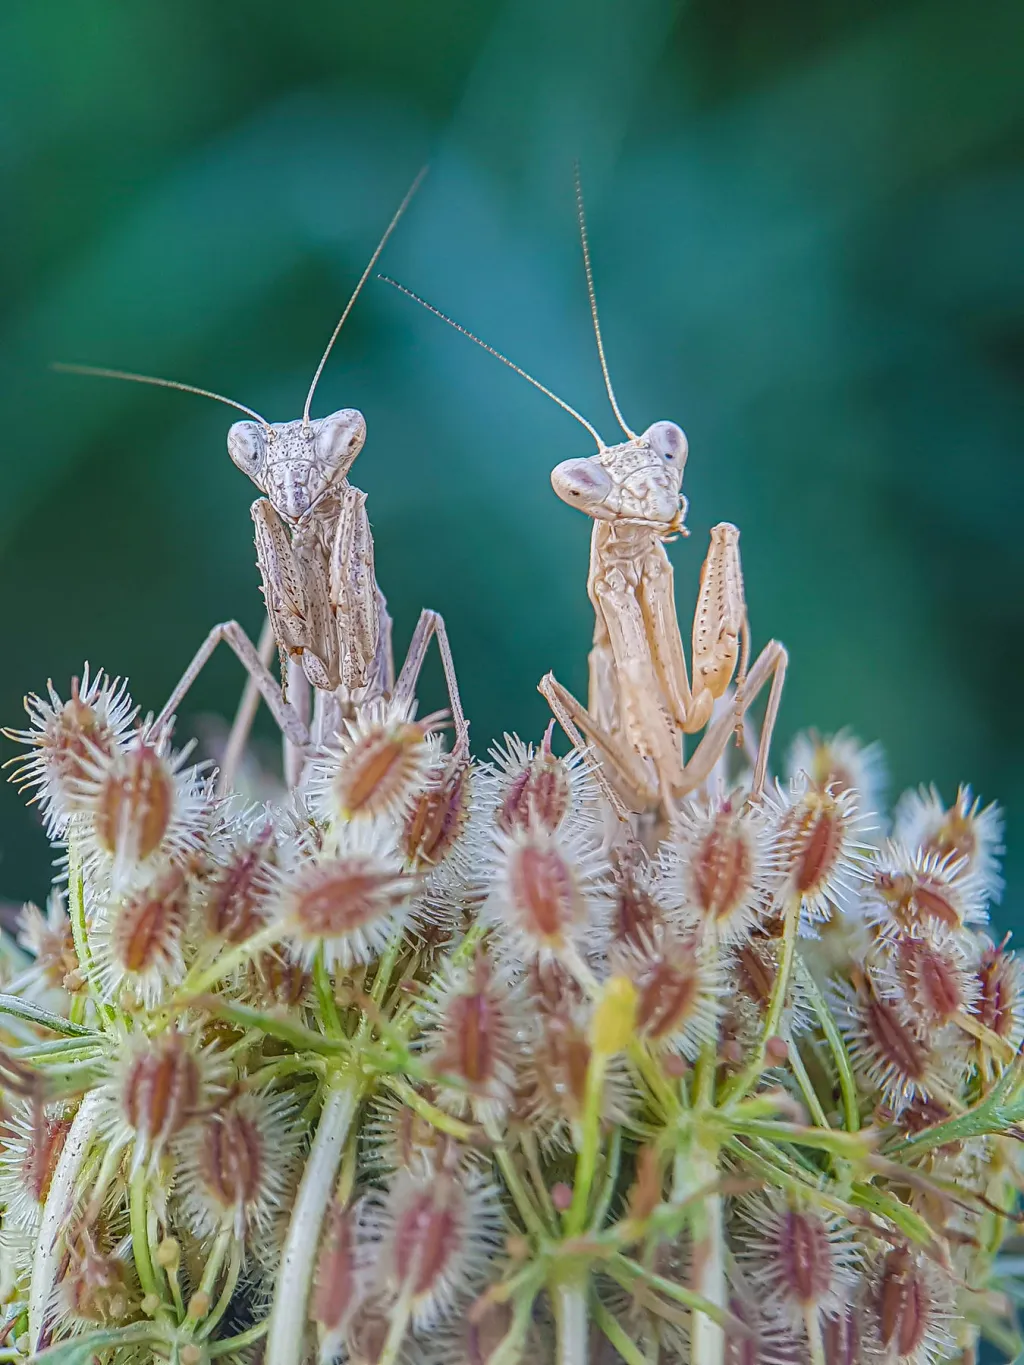 První místo v kategorii Mobilní fotografie hmyzu získal Fabio Sartori za snímek „Duo“